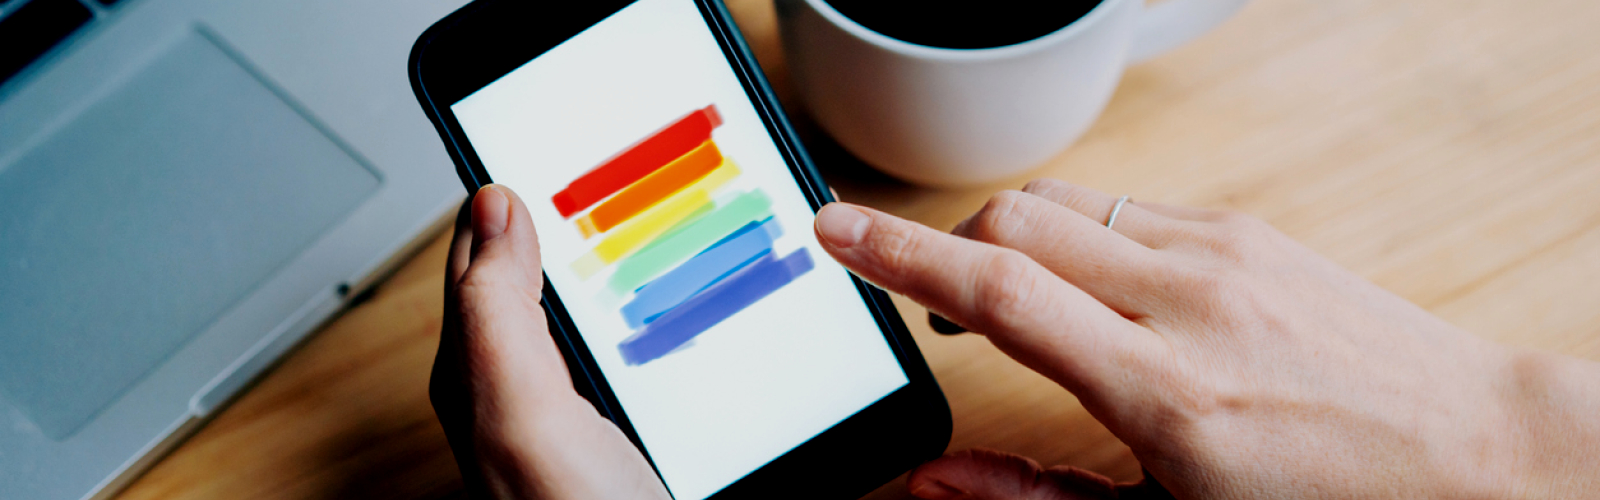 Regenboog op een smartphone met een tas koffie ernaast